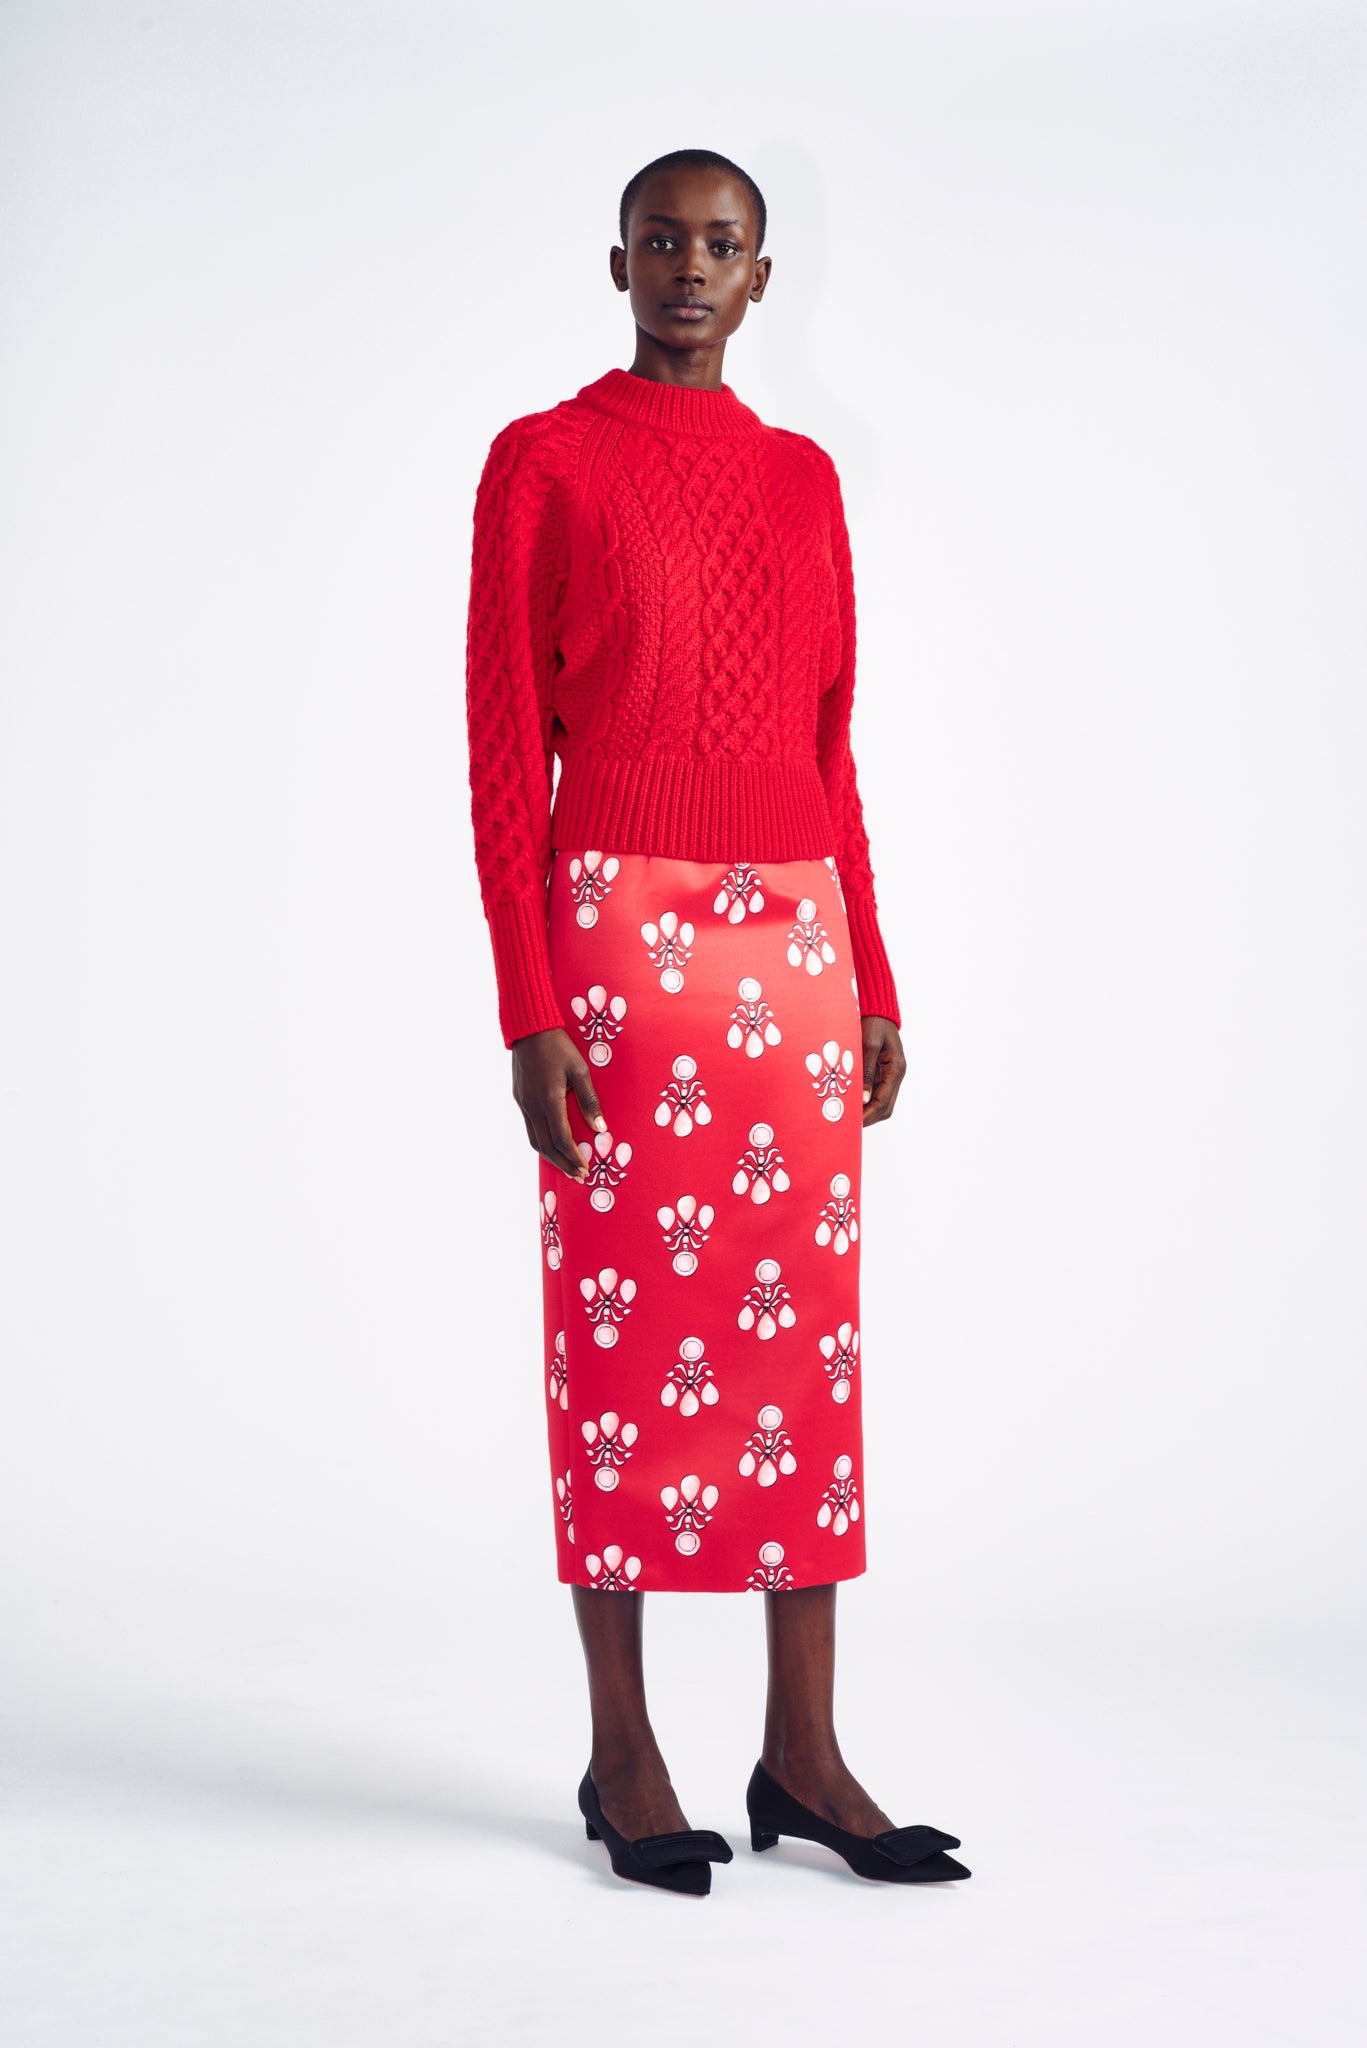 Emilia Wickstead Lorelei Red jewel print pencil skirt